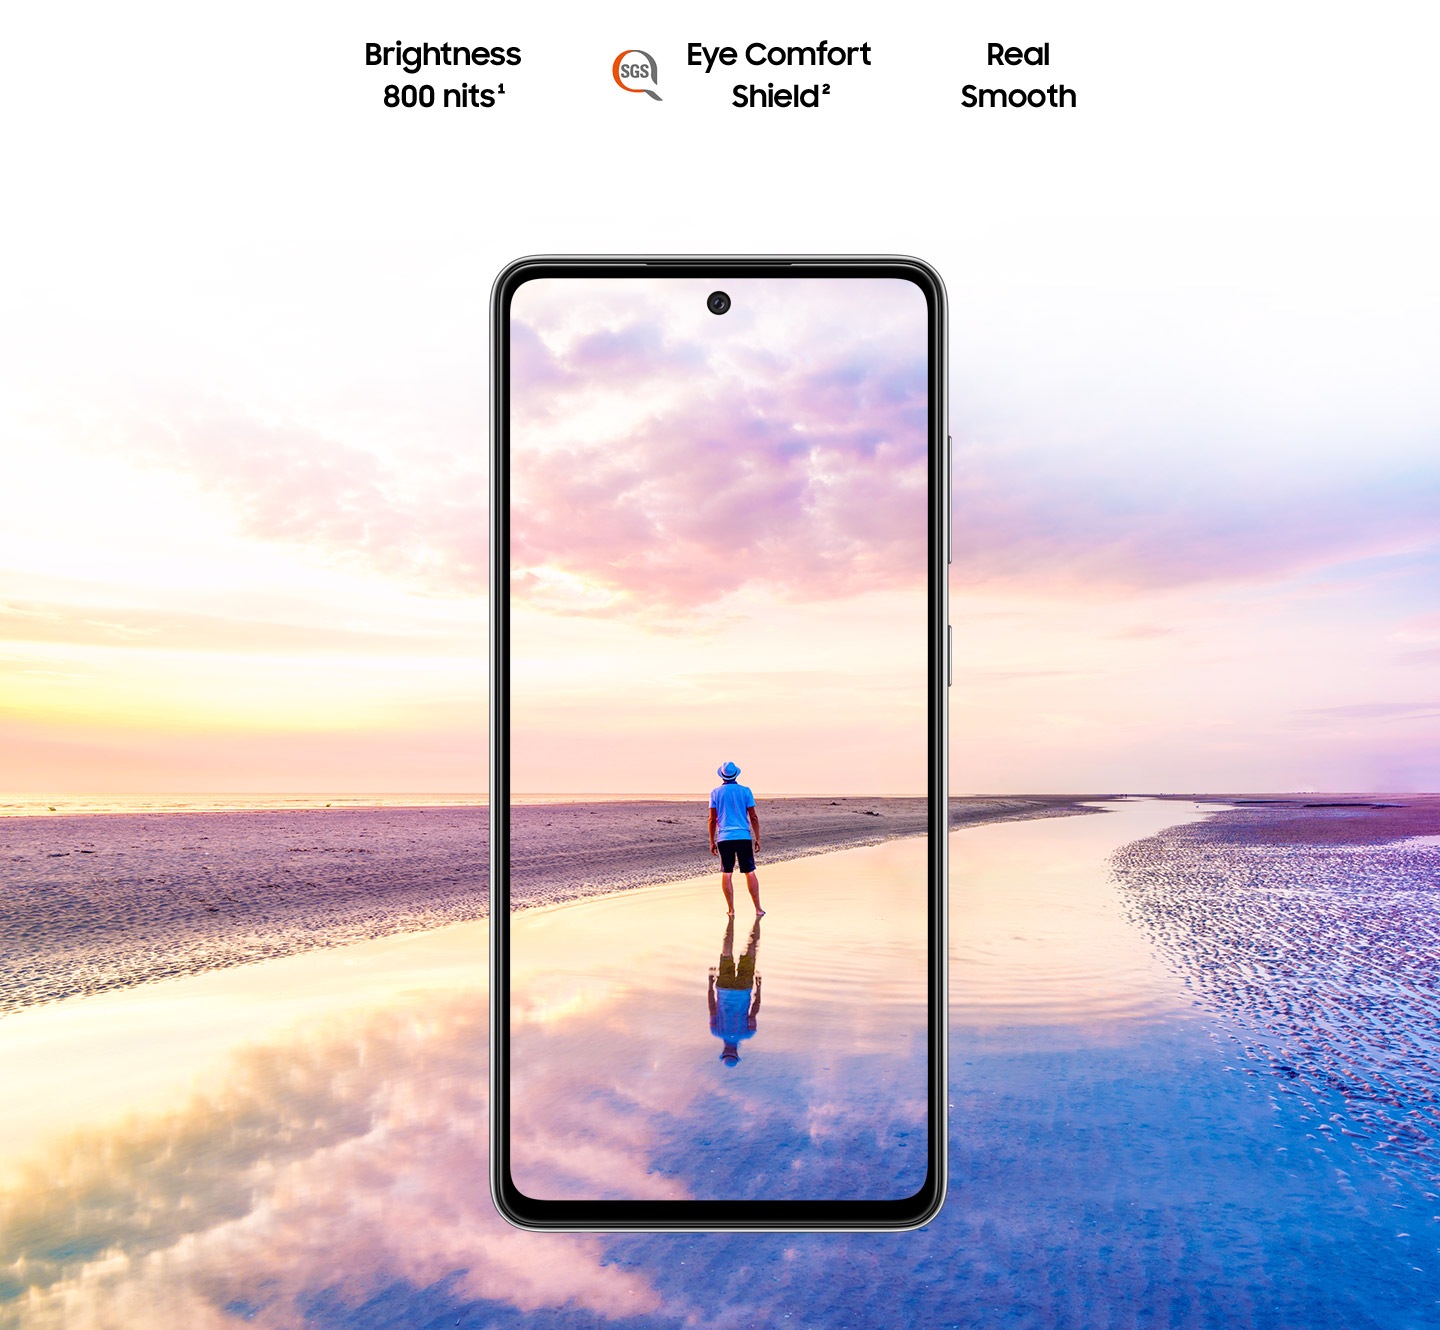 Galaxy A52 prikazan sprijeda. Scena muškarca koji stoji na plaži u suton dok se na nebu miješaju ružičaste i plave nijanse boja, proširuje se izvan granica zaslona. Vidimo tekst Svjetlina 800 nita, Eye Comfort zaštita, zajedno s logotipima tvrtke SGS i opcije Zaista uglađeno kretanje po zaslonu.